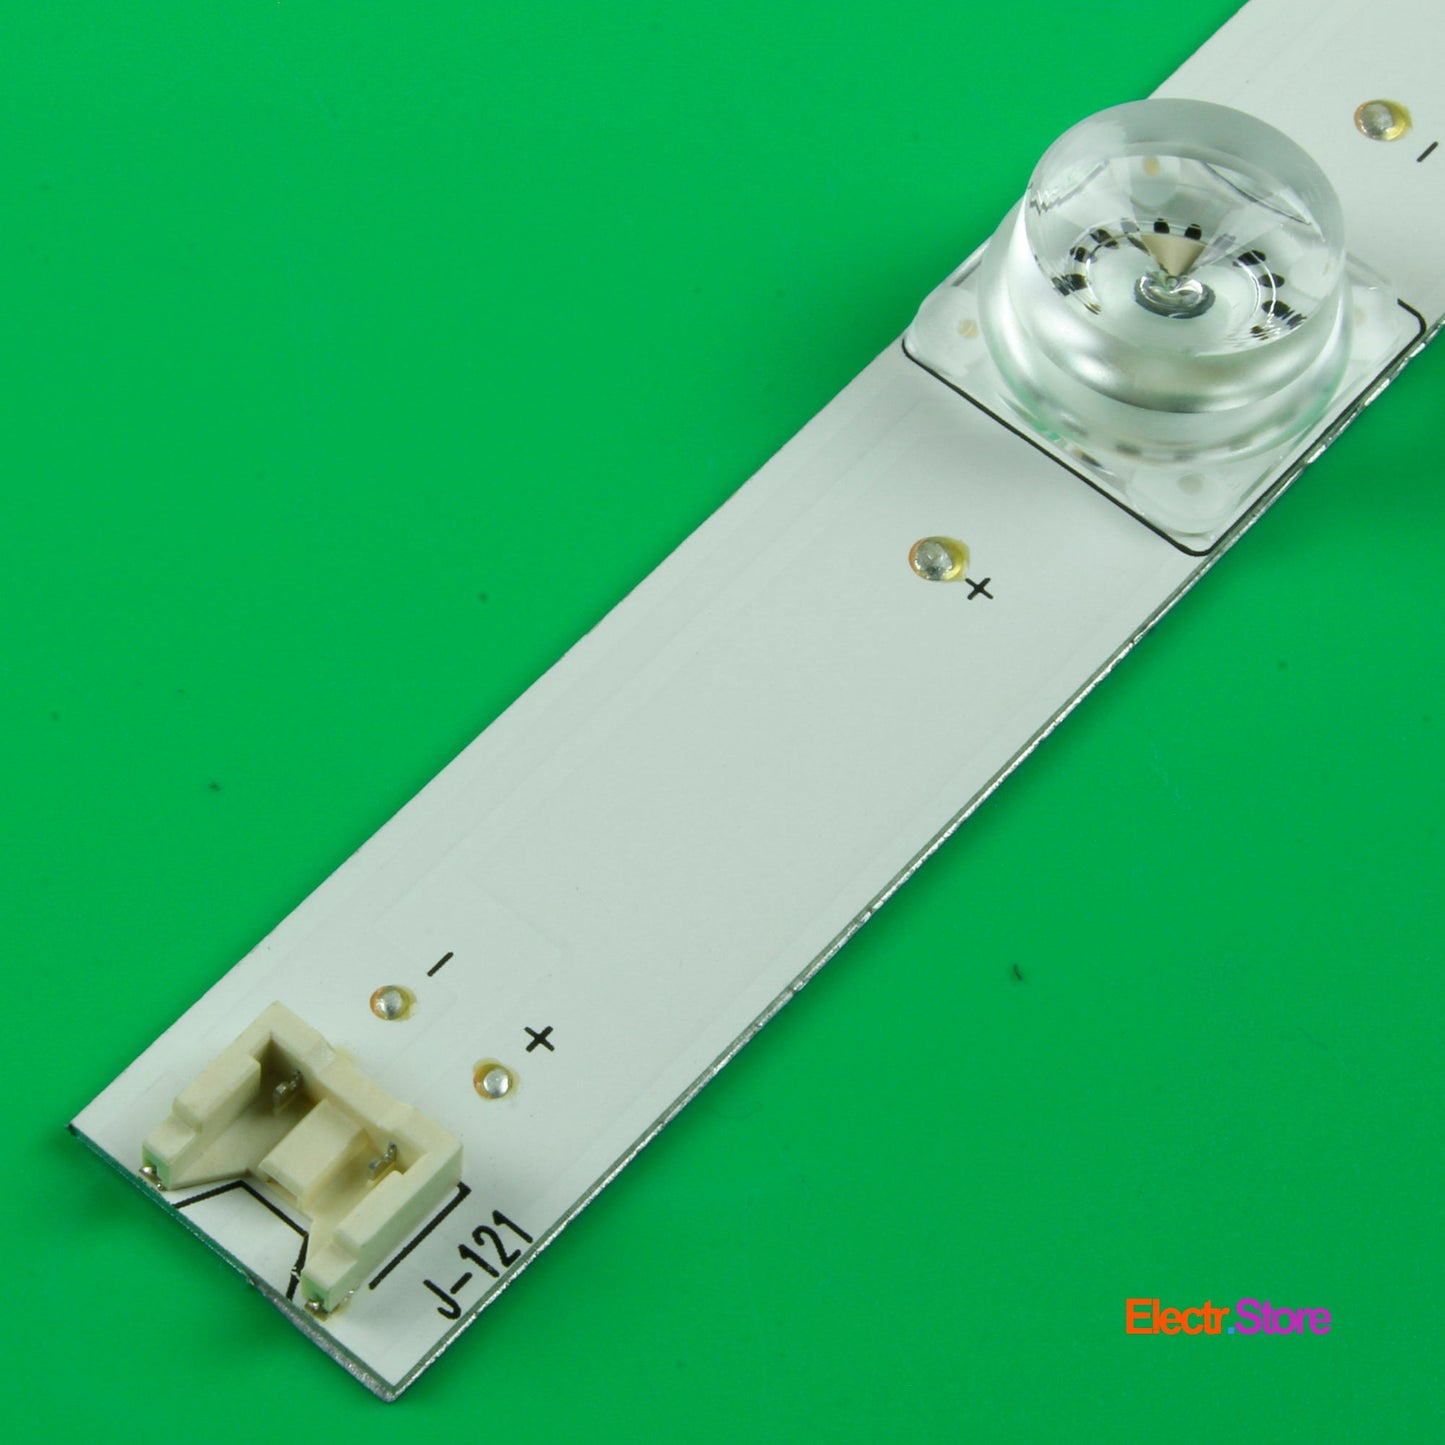 LED Backlight Strip Kits, Innotek DRT 3.0 32"_A/B Type Rev0.2, AGF78400001, 6916L-1974A/6916L-1975A (Square Pedstal, 3 pcs/kit), for TV 32" LG: 32LF5610, 32LF561V, 32LF5800, 32LF5809 32" DRT 3.0 32"_A/B Type Rev0.2 LED Backlights LG Electr.Store